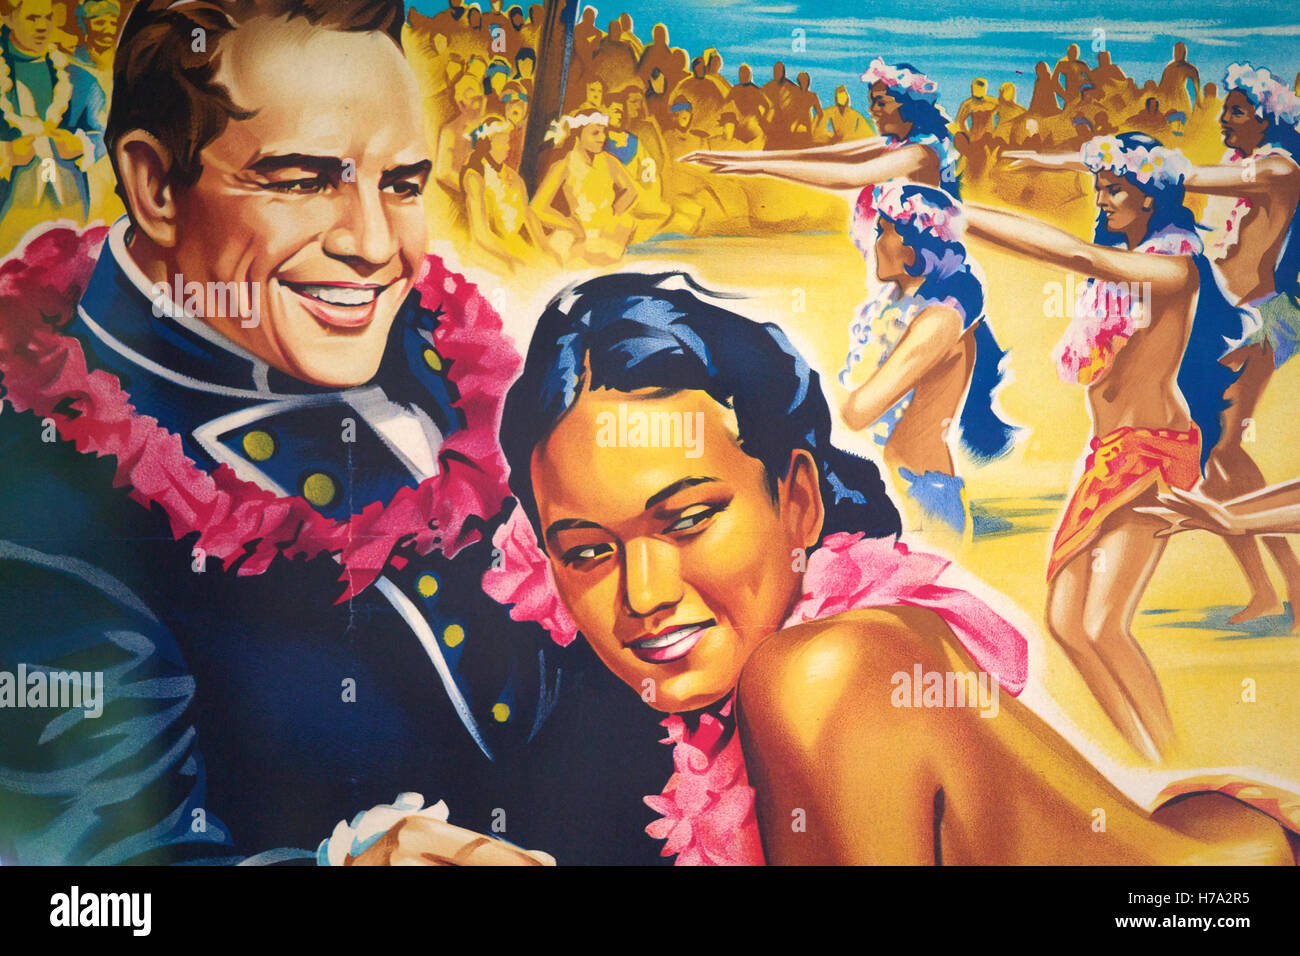 Pitcairn, Söhne von Meuterern! -14/06/2012 - Pitcairn / Pitcairn - Marlon Brando und Mafiafilm, Helden des Films 1962, sie trafen sich am Set - Olivier Goujon / Le Pictorium Stockfoto